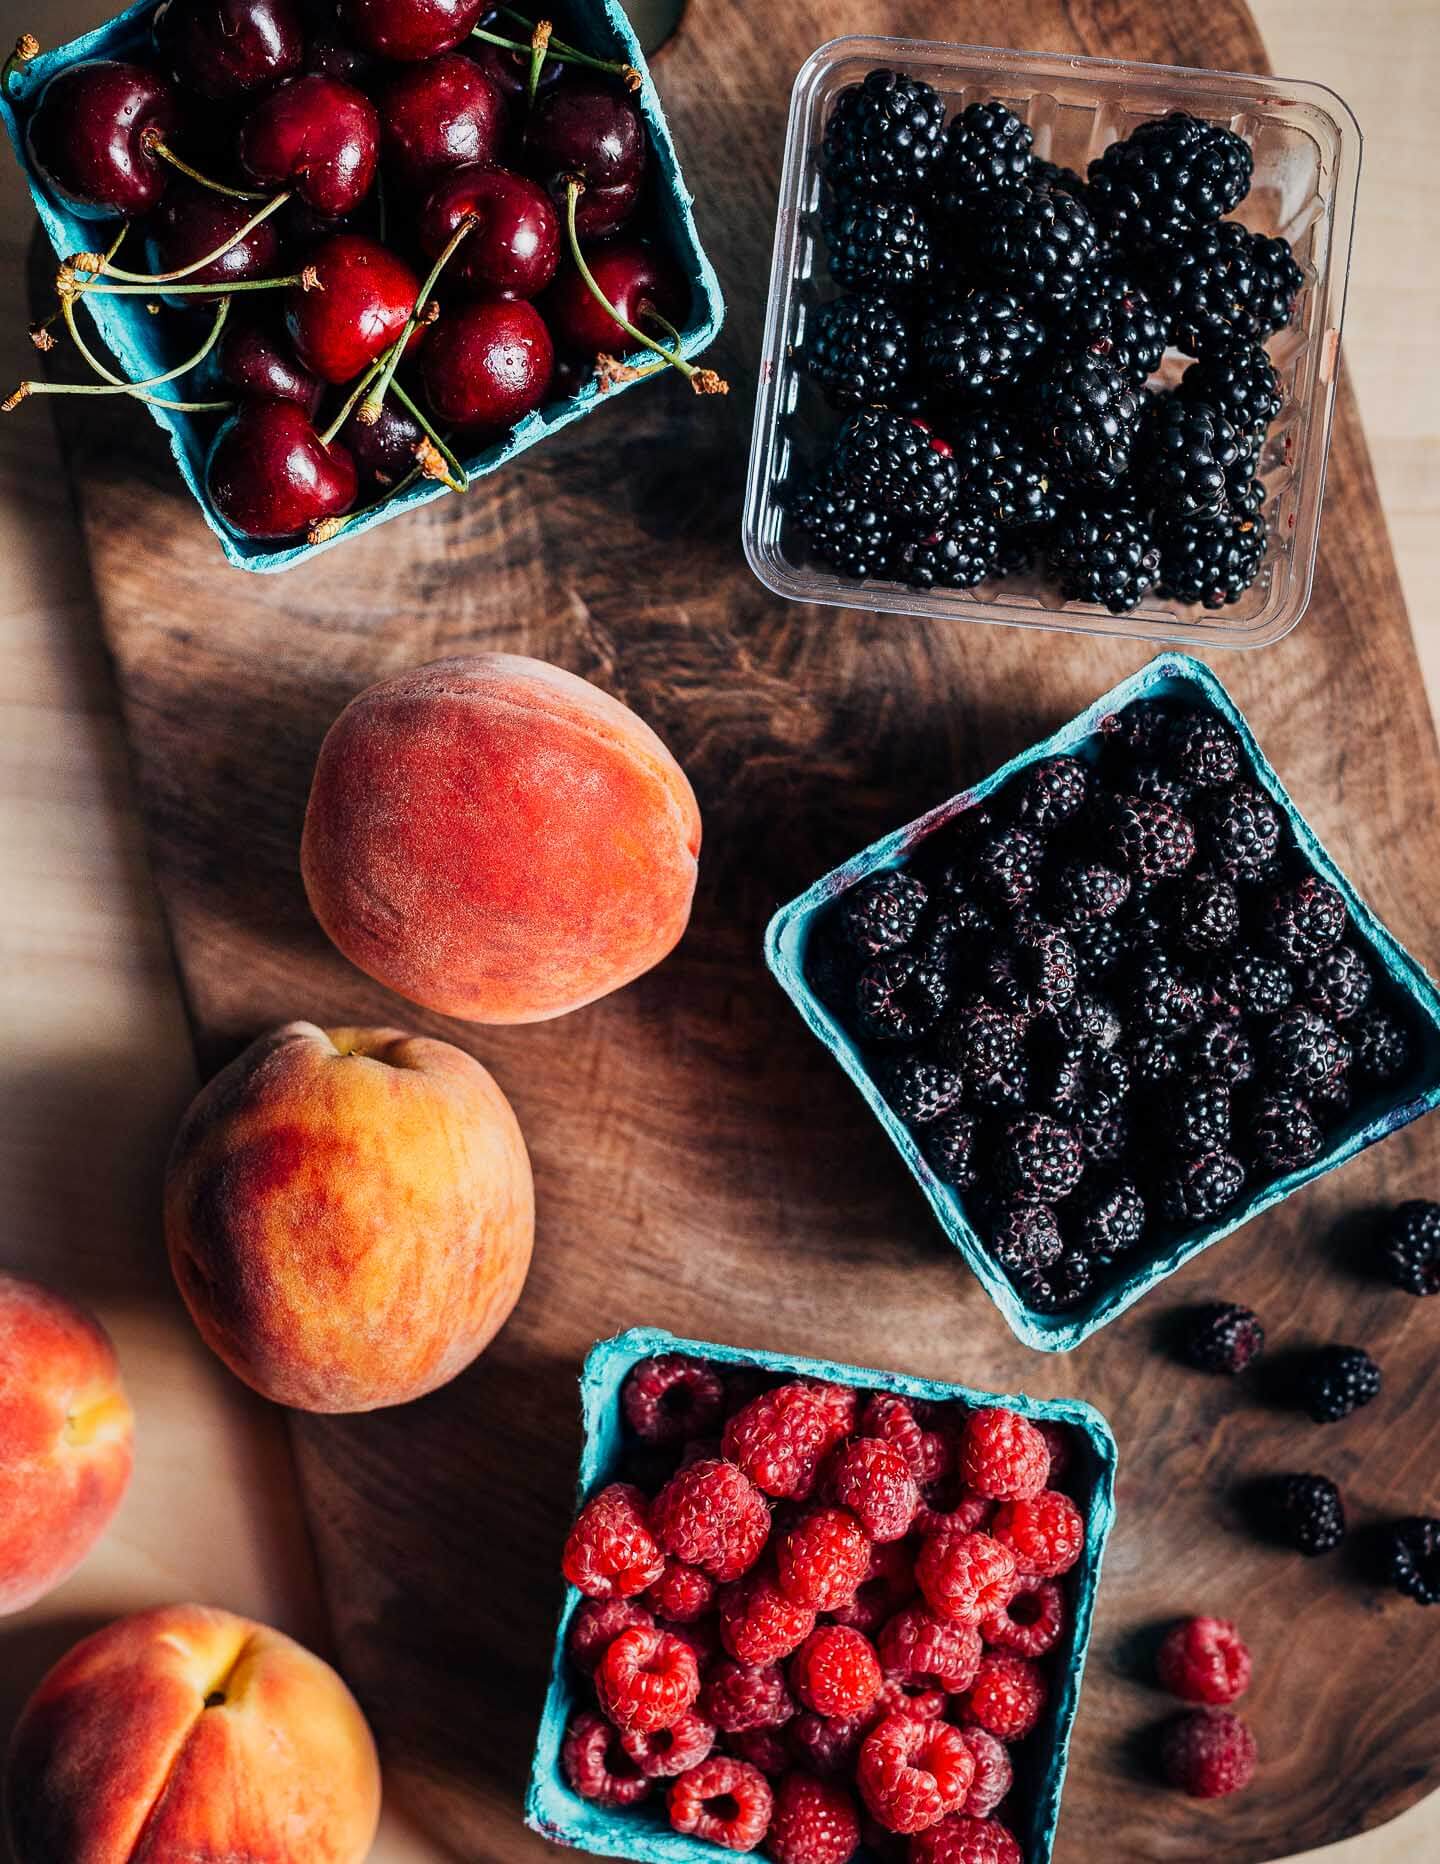 Little fruit holders with blackberries, black raspberries, cherries, and red raspberries. 